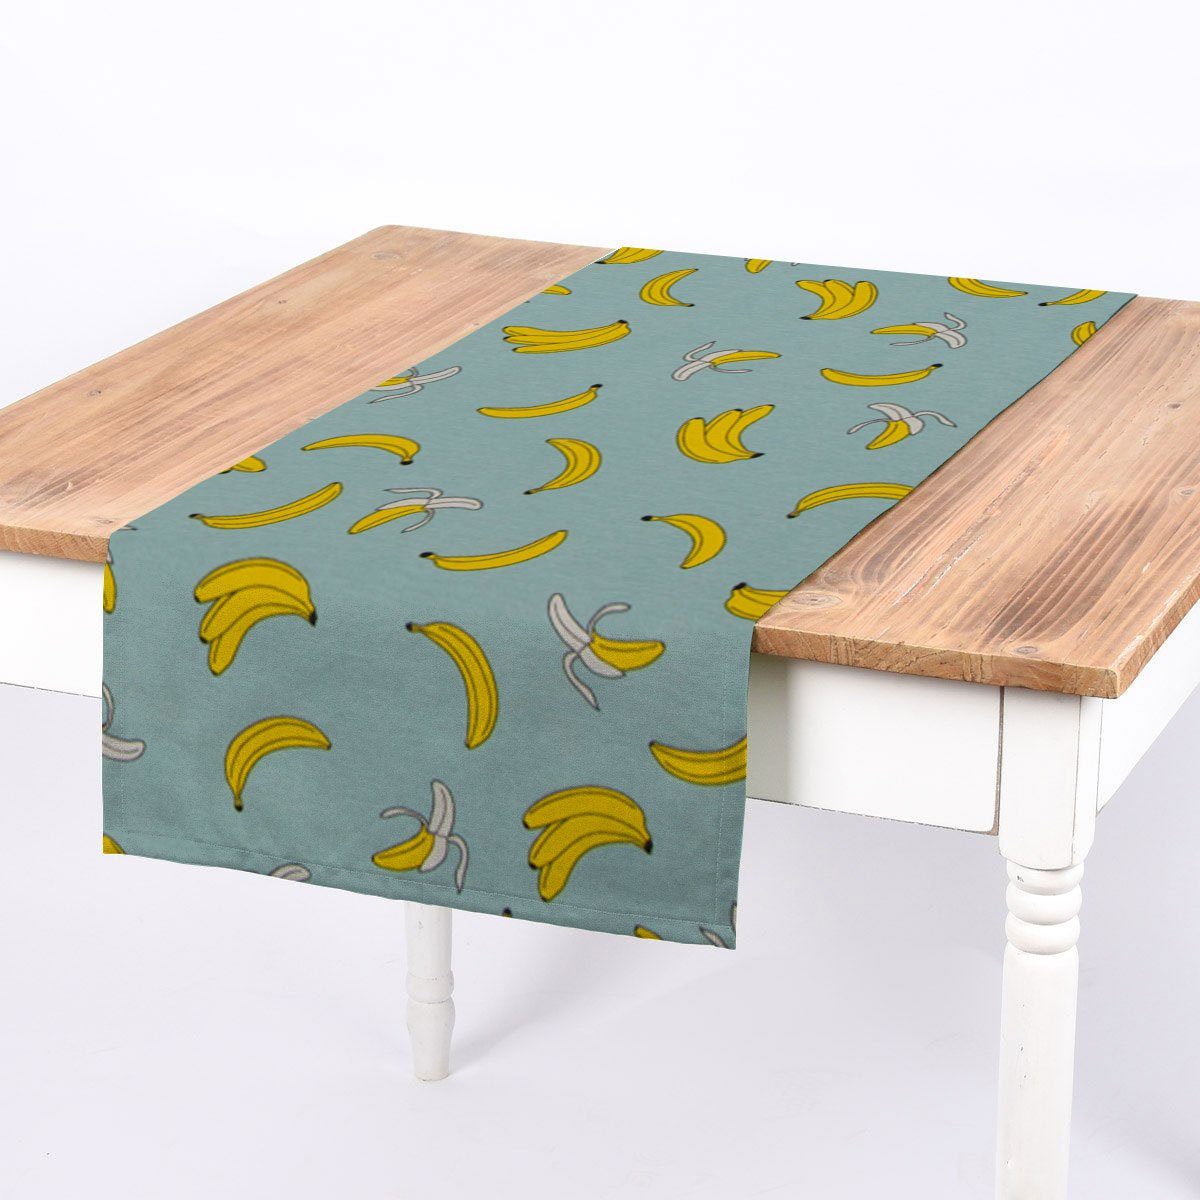 SCHÖNER LEBEN. Tischläufer SCHÖNER LEBEN. Tischläufer Canvas Popart Bananen mint gelb 40x160cm, handmade